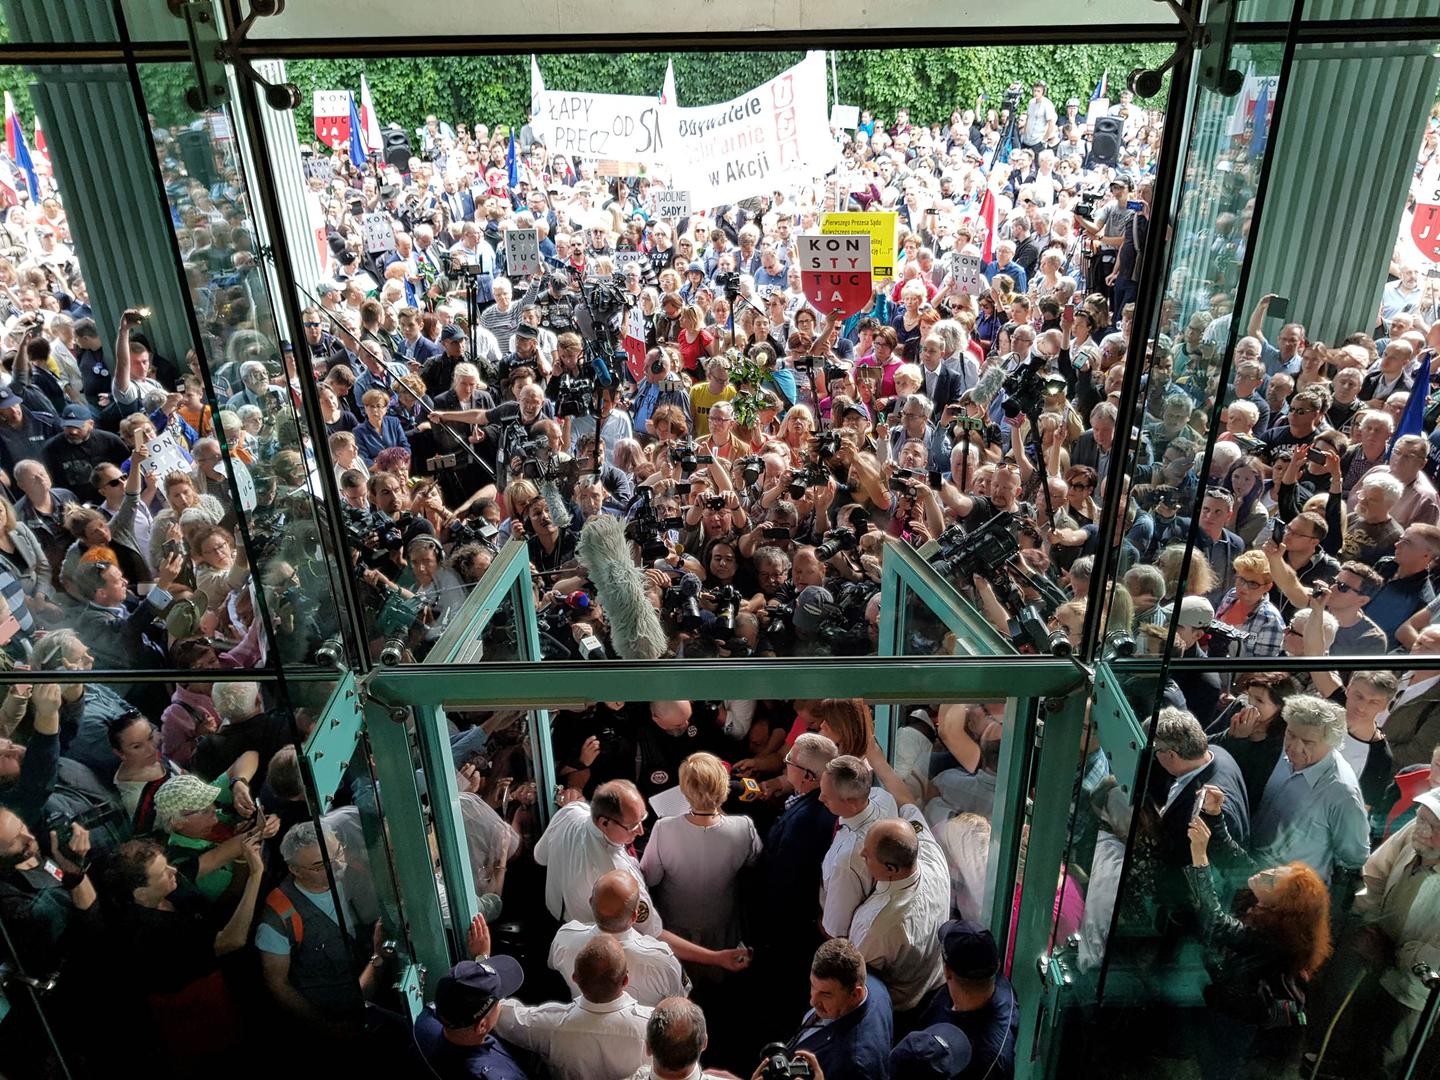 رئيسة المحكمة العليا مالغورزاتا غيرسدورف تخاطب المؤيدين والإعلام قبل دخول مبنى المحكمة العليا في وارسو، بولندا في 4 يوليو/تموز 2018